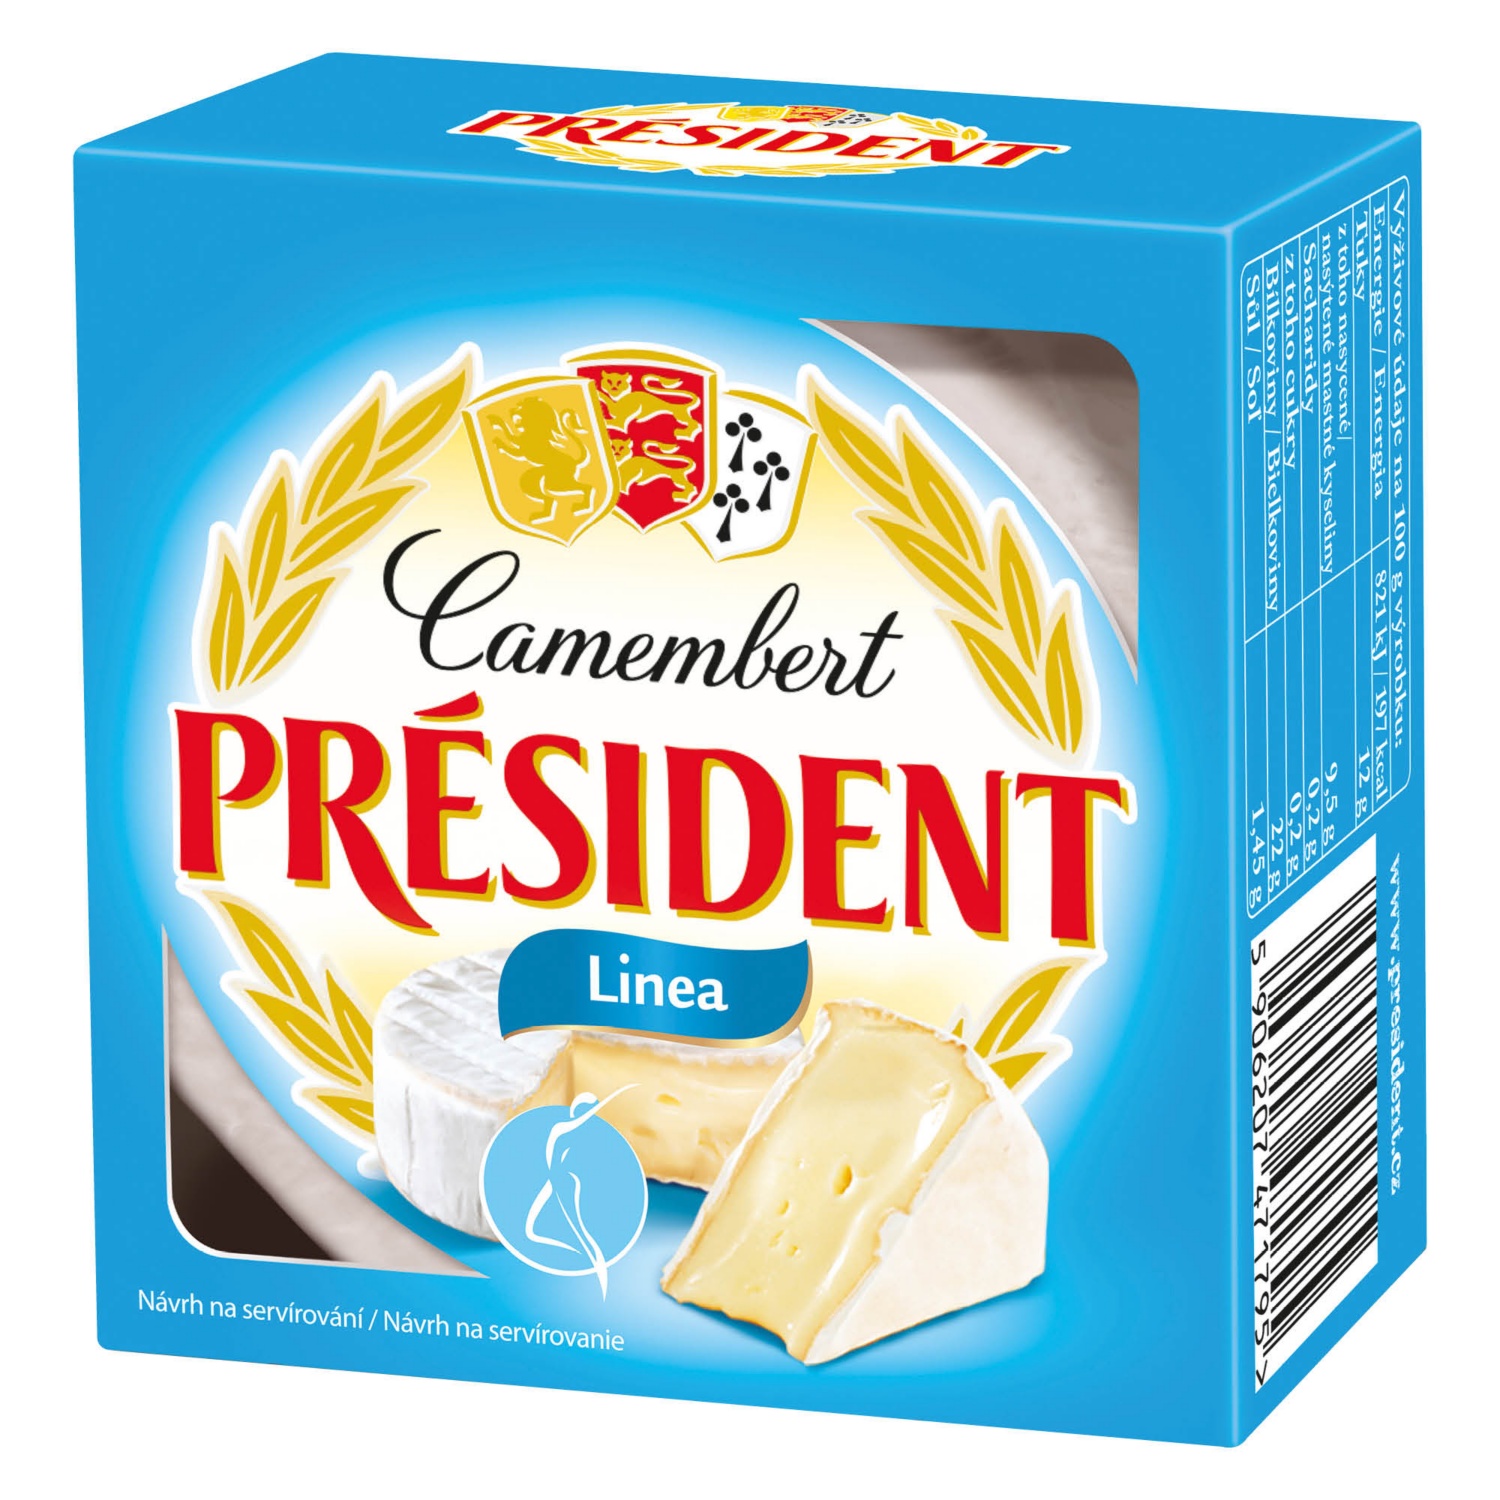 PRÉSIDENT Camembert, light, 90 g